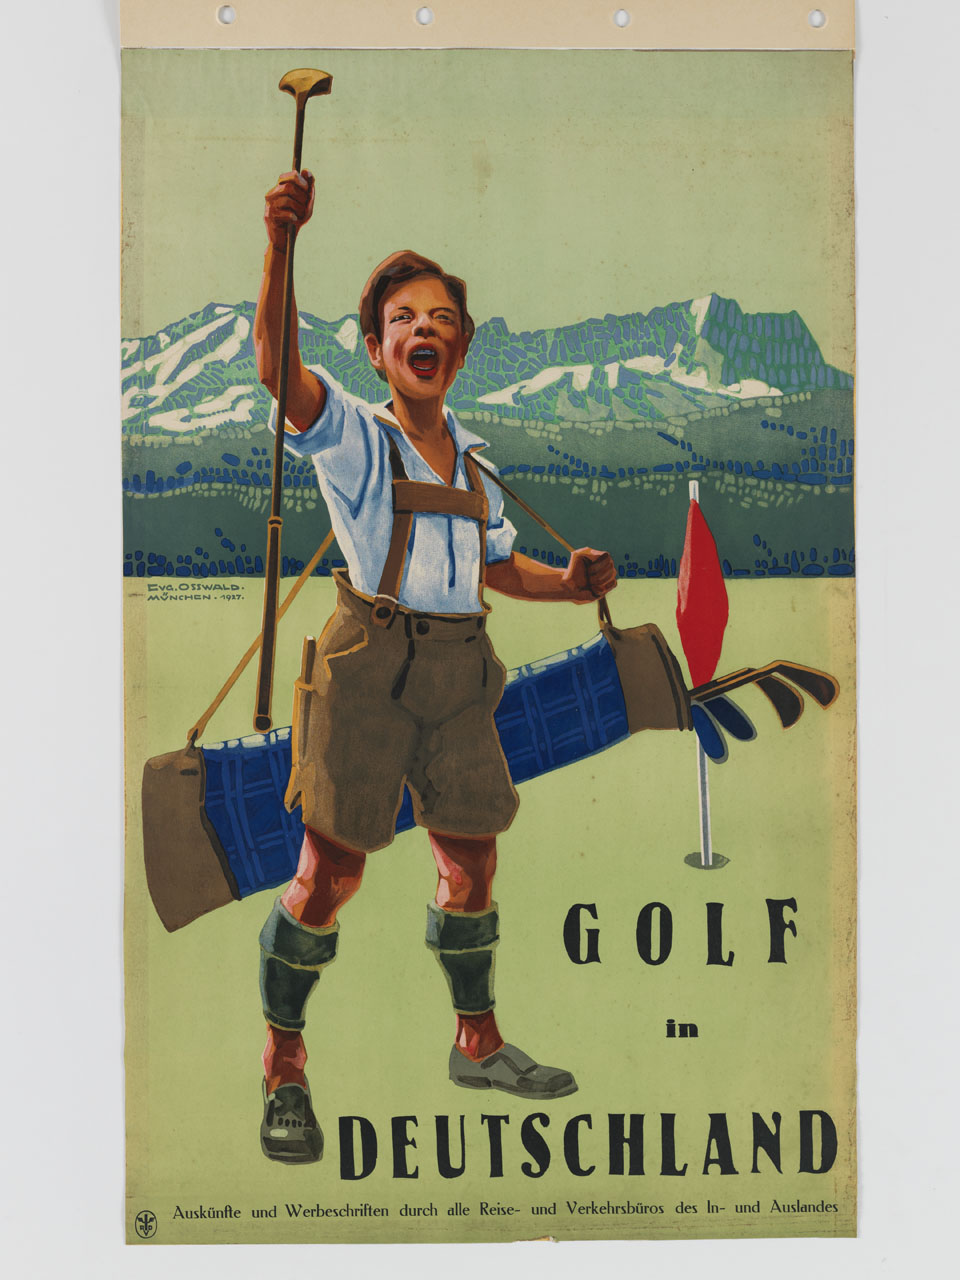 golfista in Lederhosen esulta sollevando una mazza da golf (manifesto) di Osswald Eugen (sec. XX)